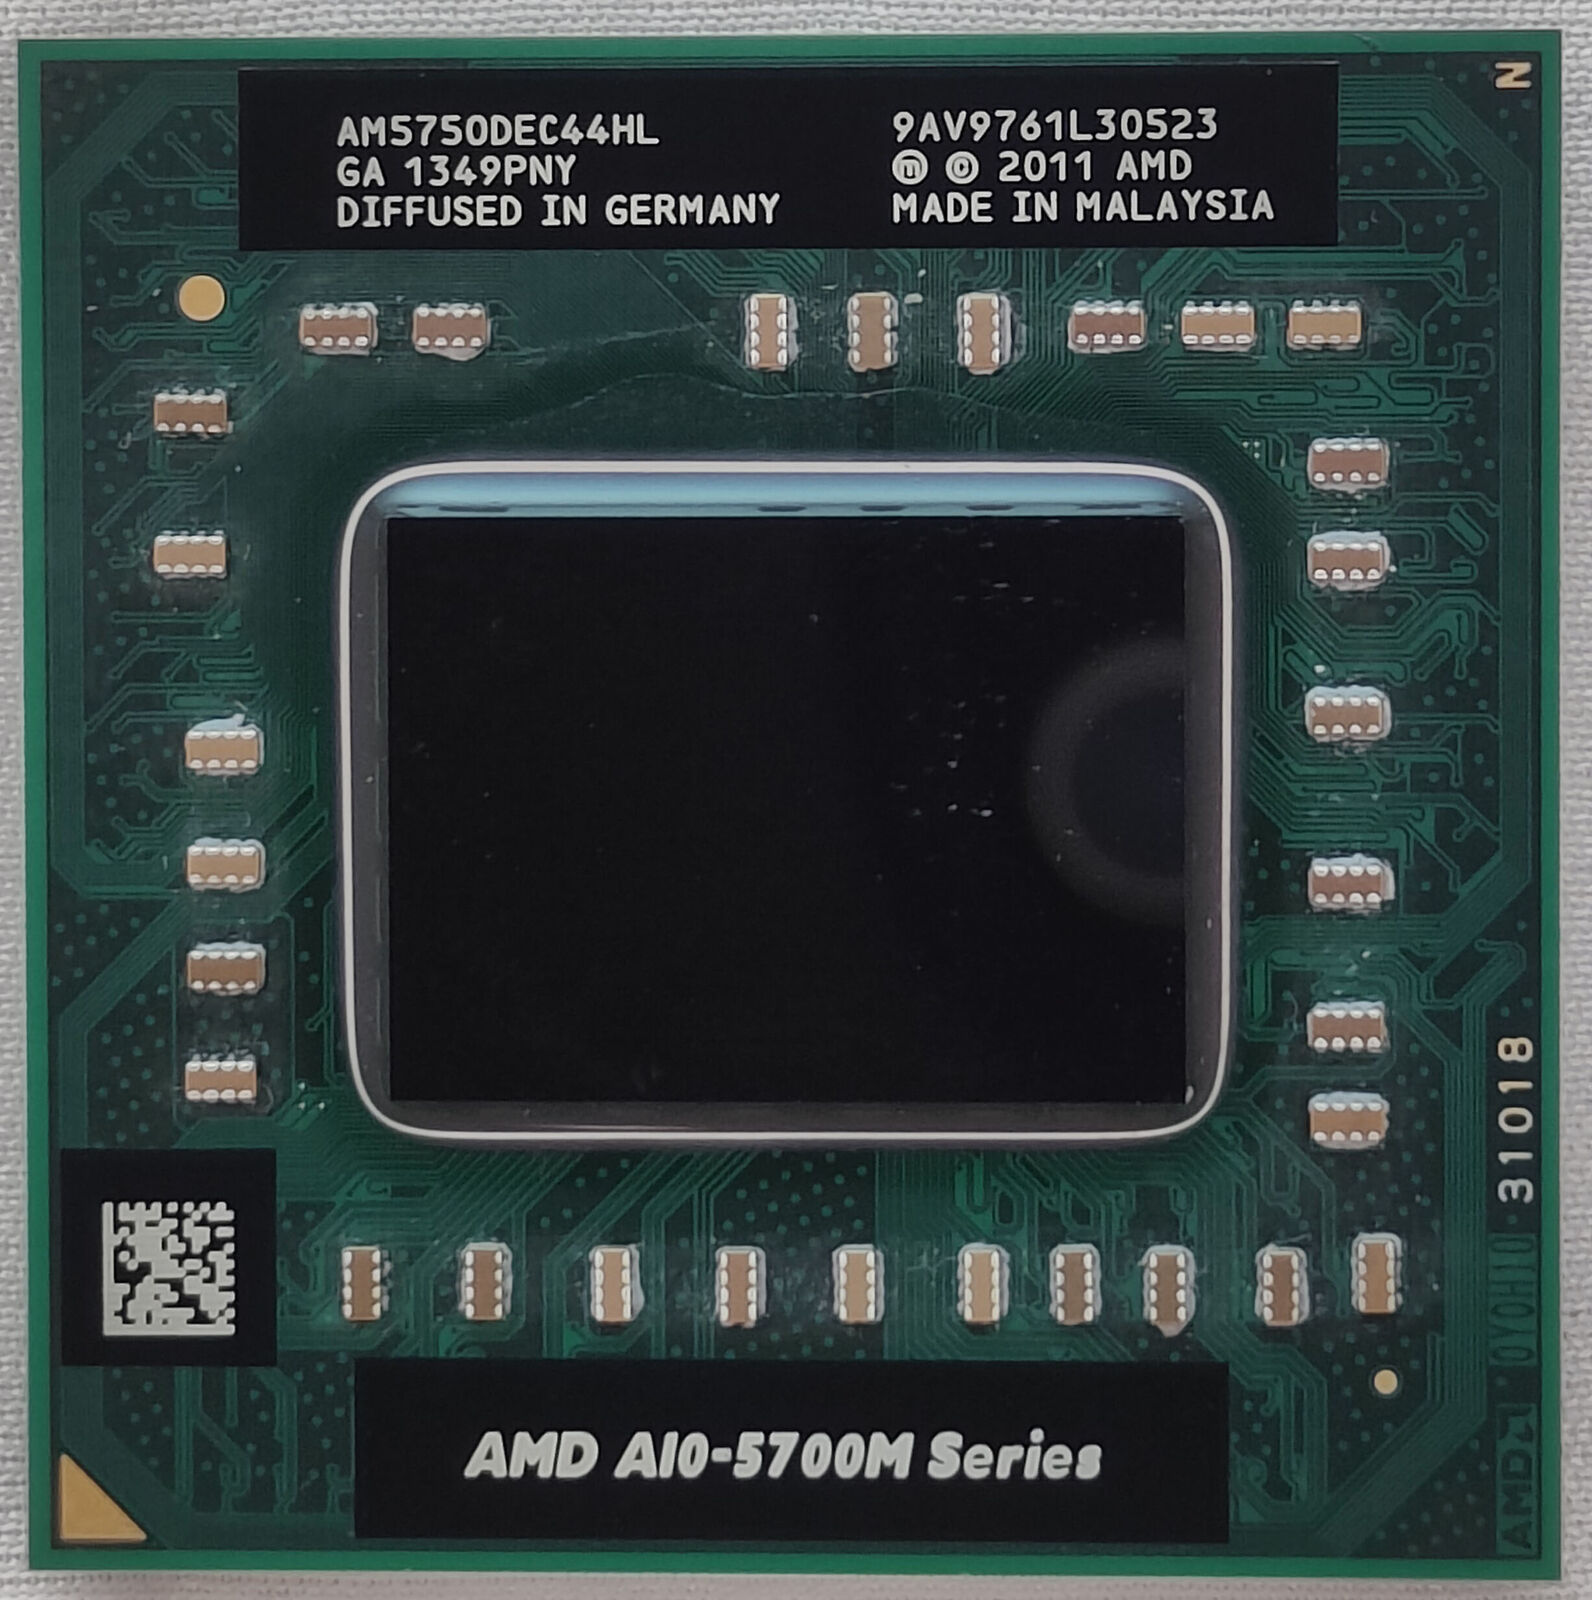 AMD A10-5750M 2.50GHz Quad-Core CPU Processor AM57S0DEC44HL